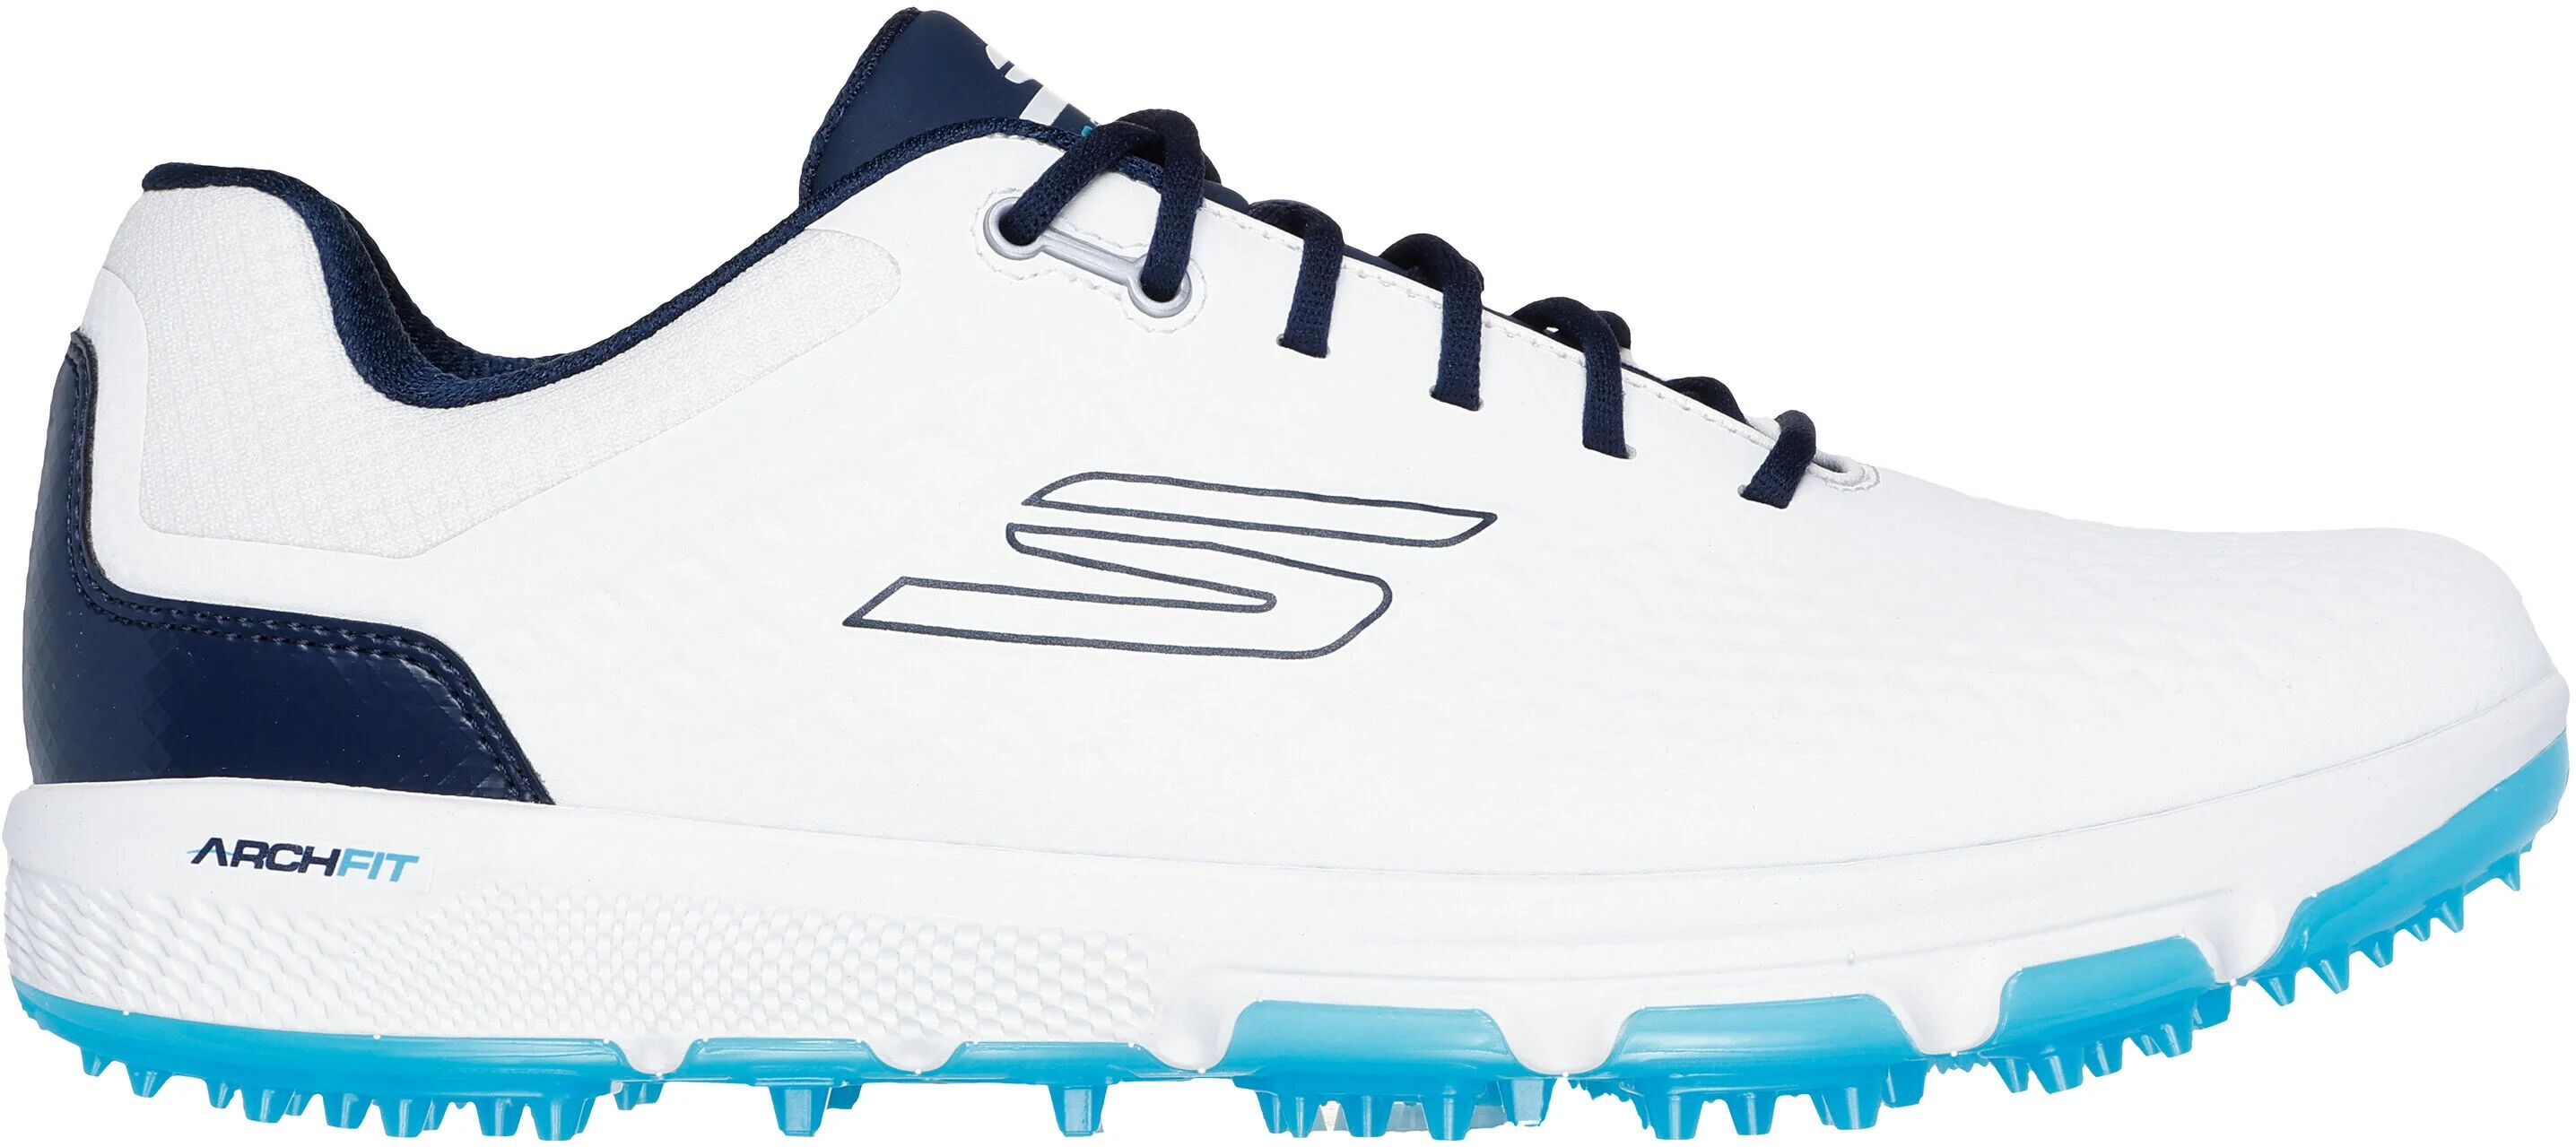 Skechers GO GOLF PRO 6 SL Golf Shoes - White/Navy - 9.5 - MEDIUM